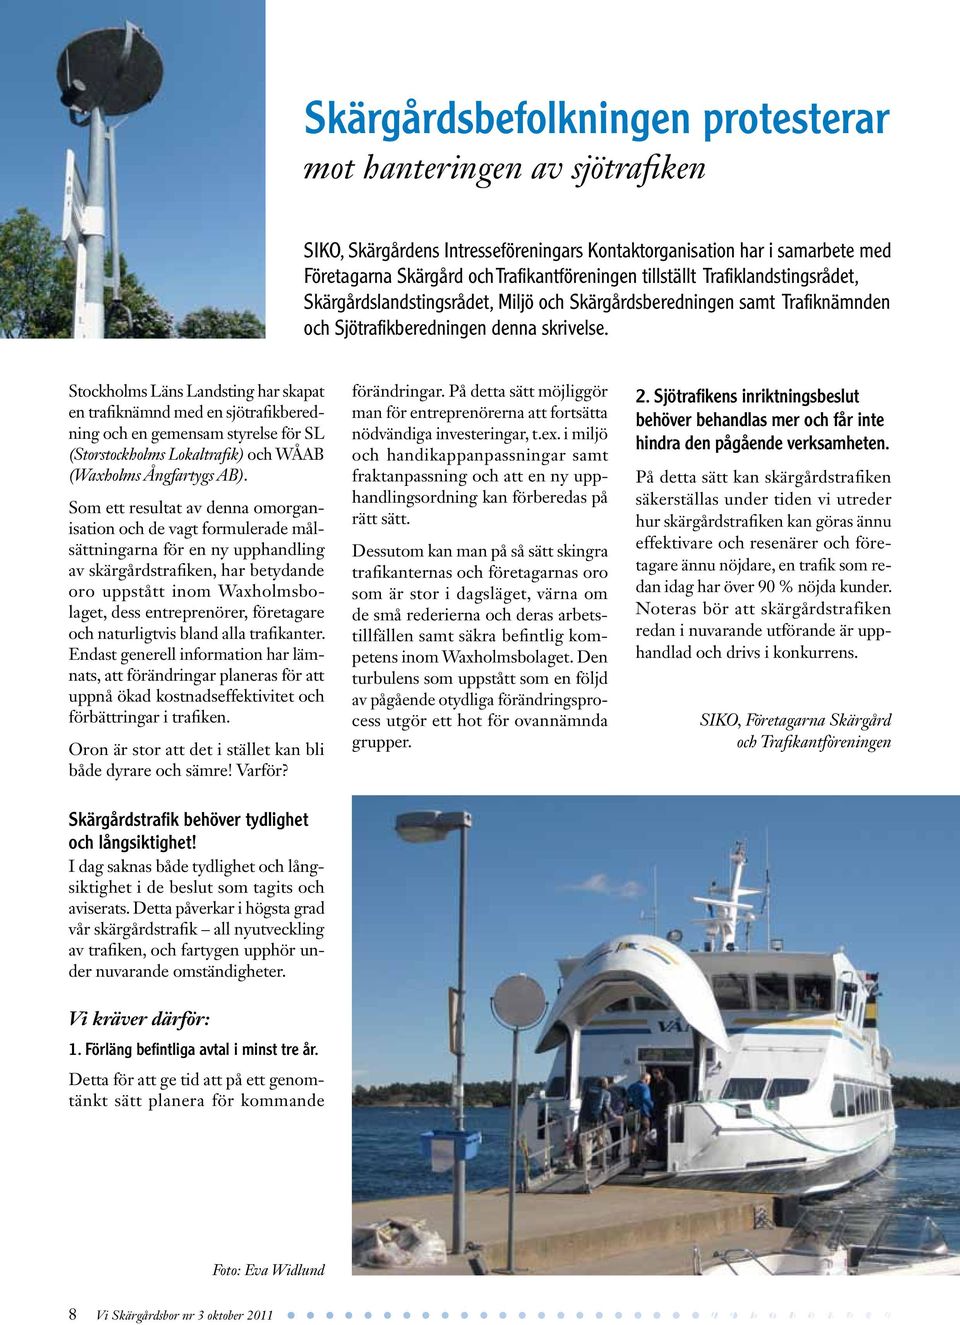 Stockholms Läns Landsting har skapat en trafiknämnd med en sjötrafikberedning och en gemensam styrelse för SL (Storstockholms Lokaltrafik) och WÅAB (Waxholms Ångfartygs AB).